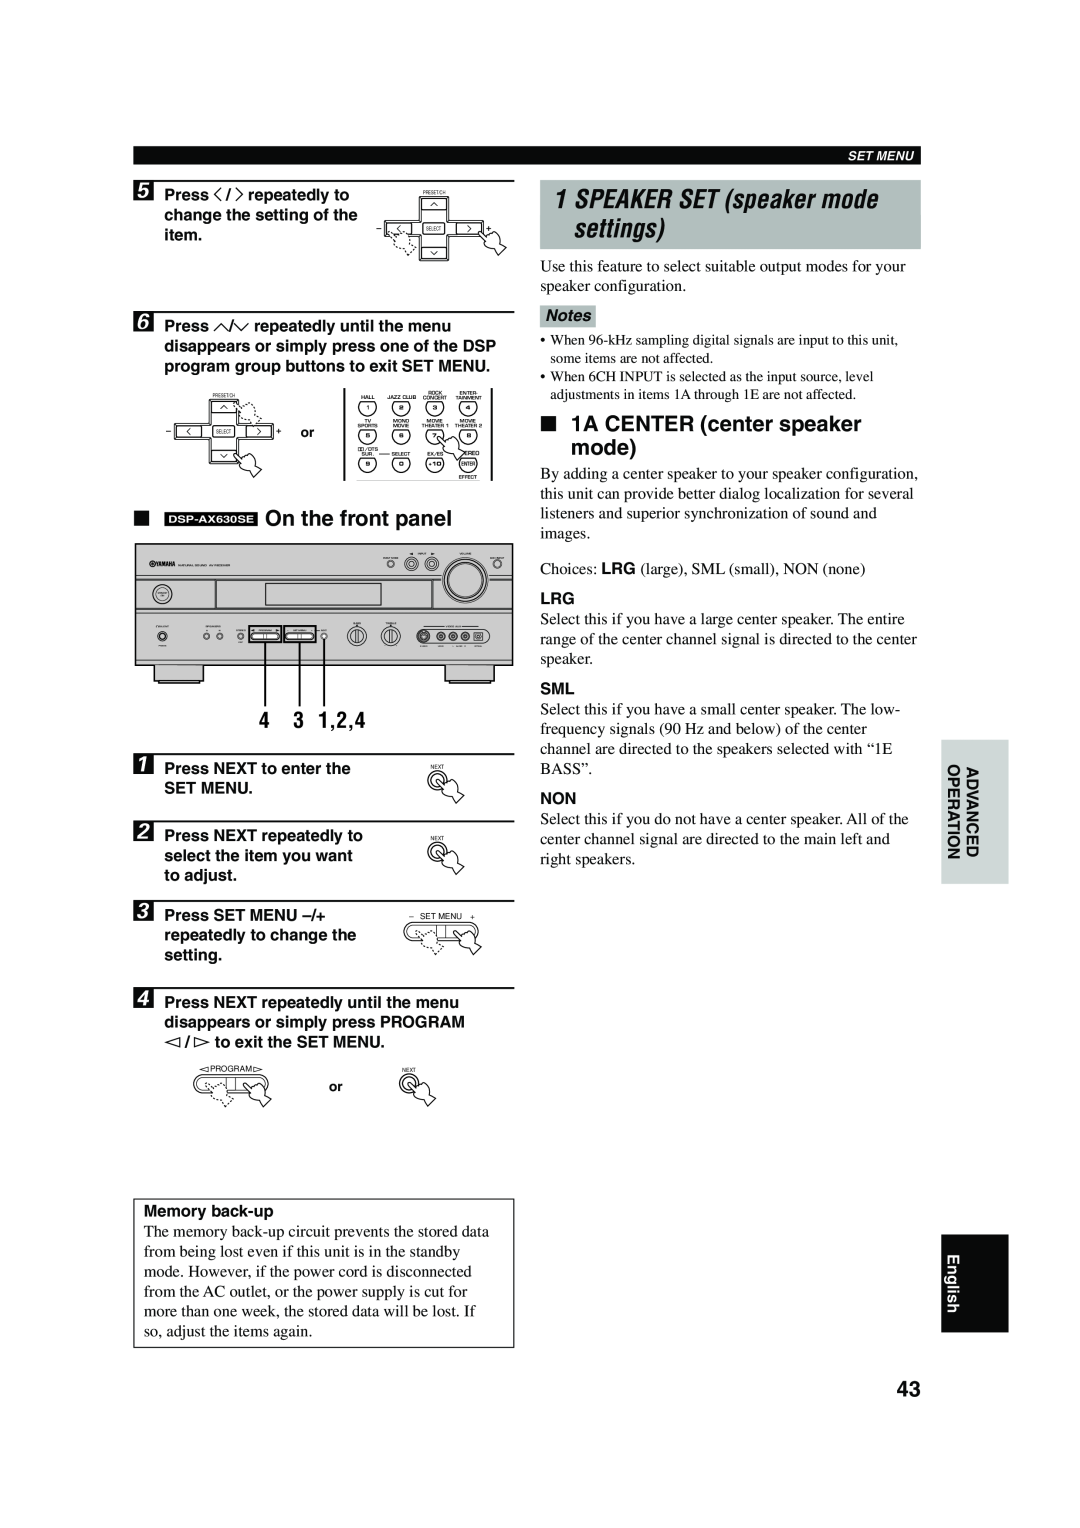 Yamaha RX-V630RDS 1SPEAKER SET speaker mode settings, On the front panel, 1,2,4, 1A CENTER center speaker mode, Notes 